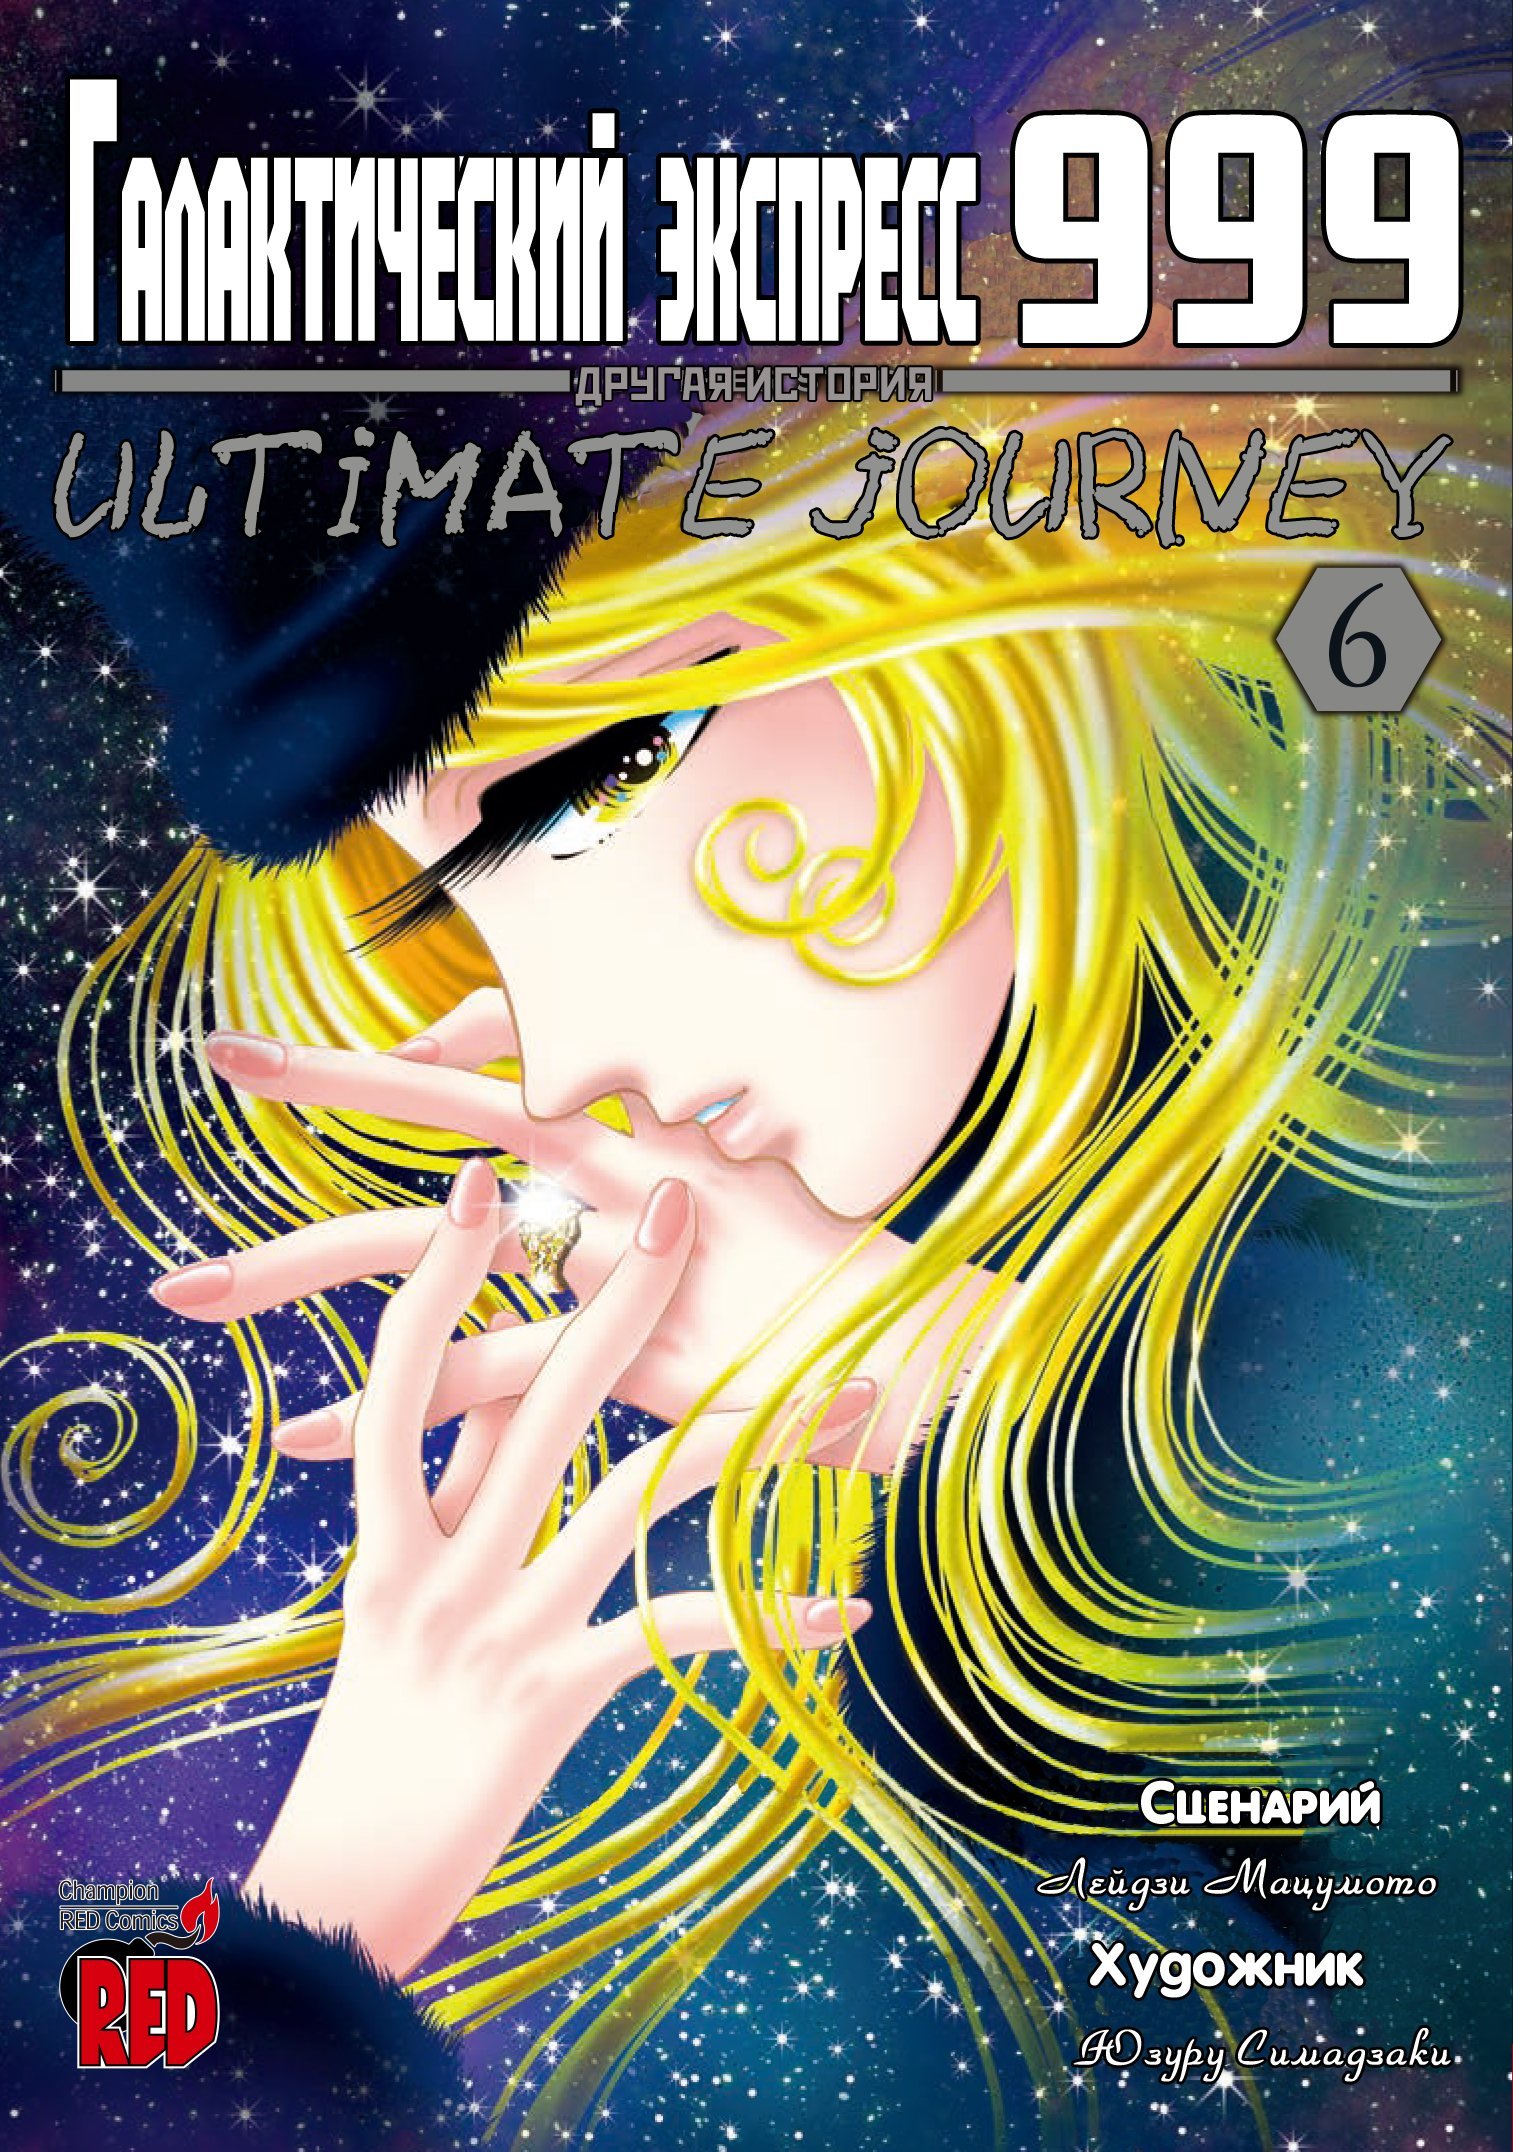 Манга Галактический экспресс 999 - Другая история: Ultimate Journey - Глава 27 Страница 1